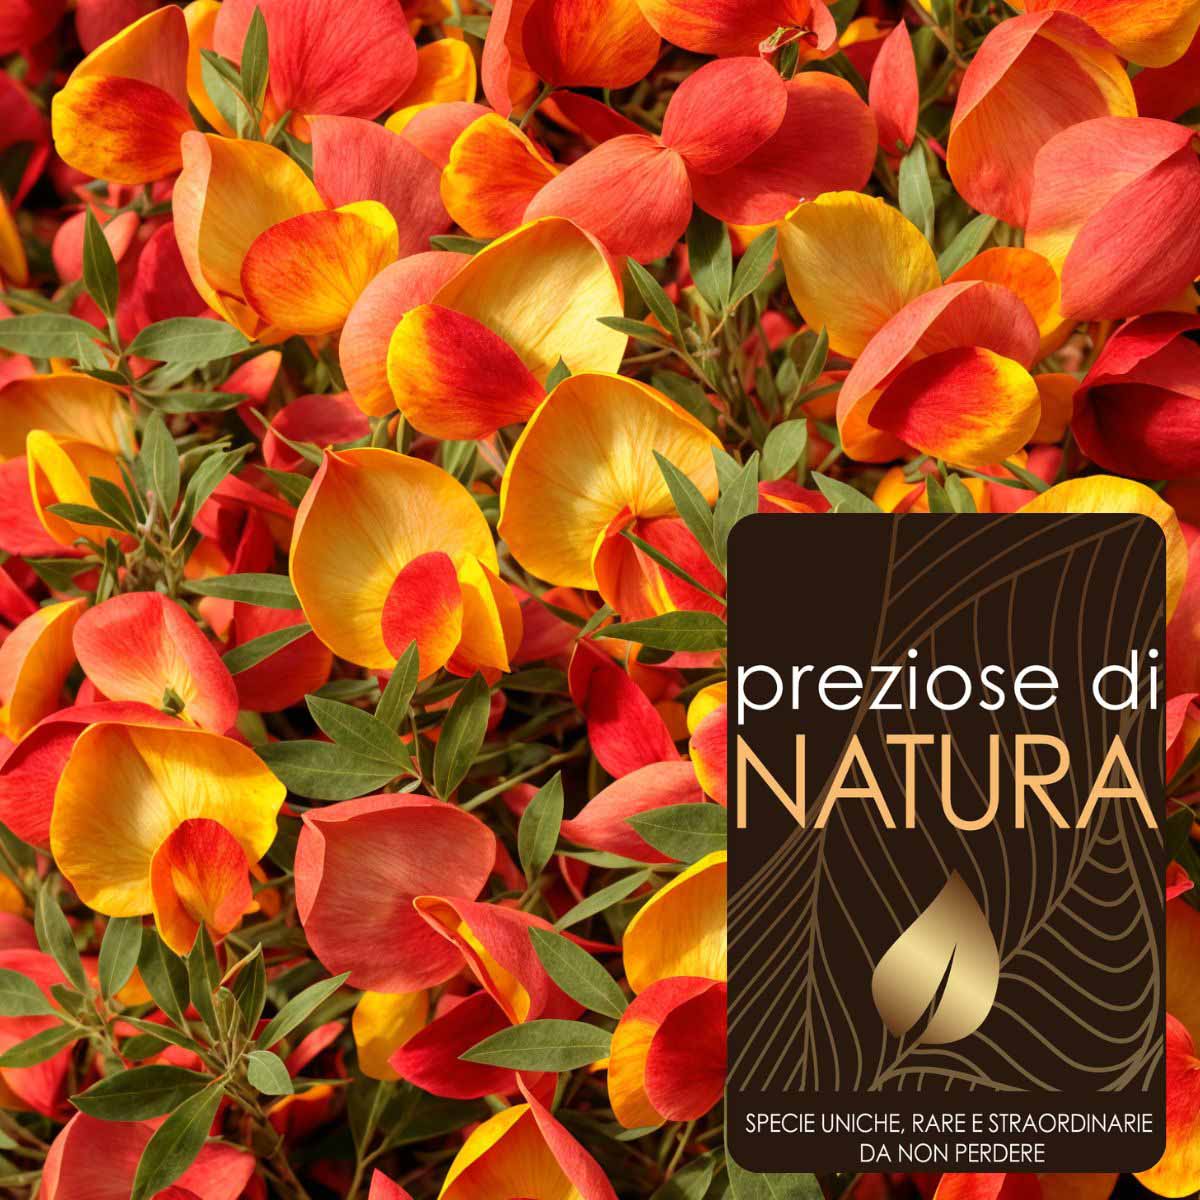 Preziose di Natura – Cytisus Scoparius (Ginestra) “Lena”